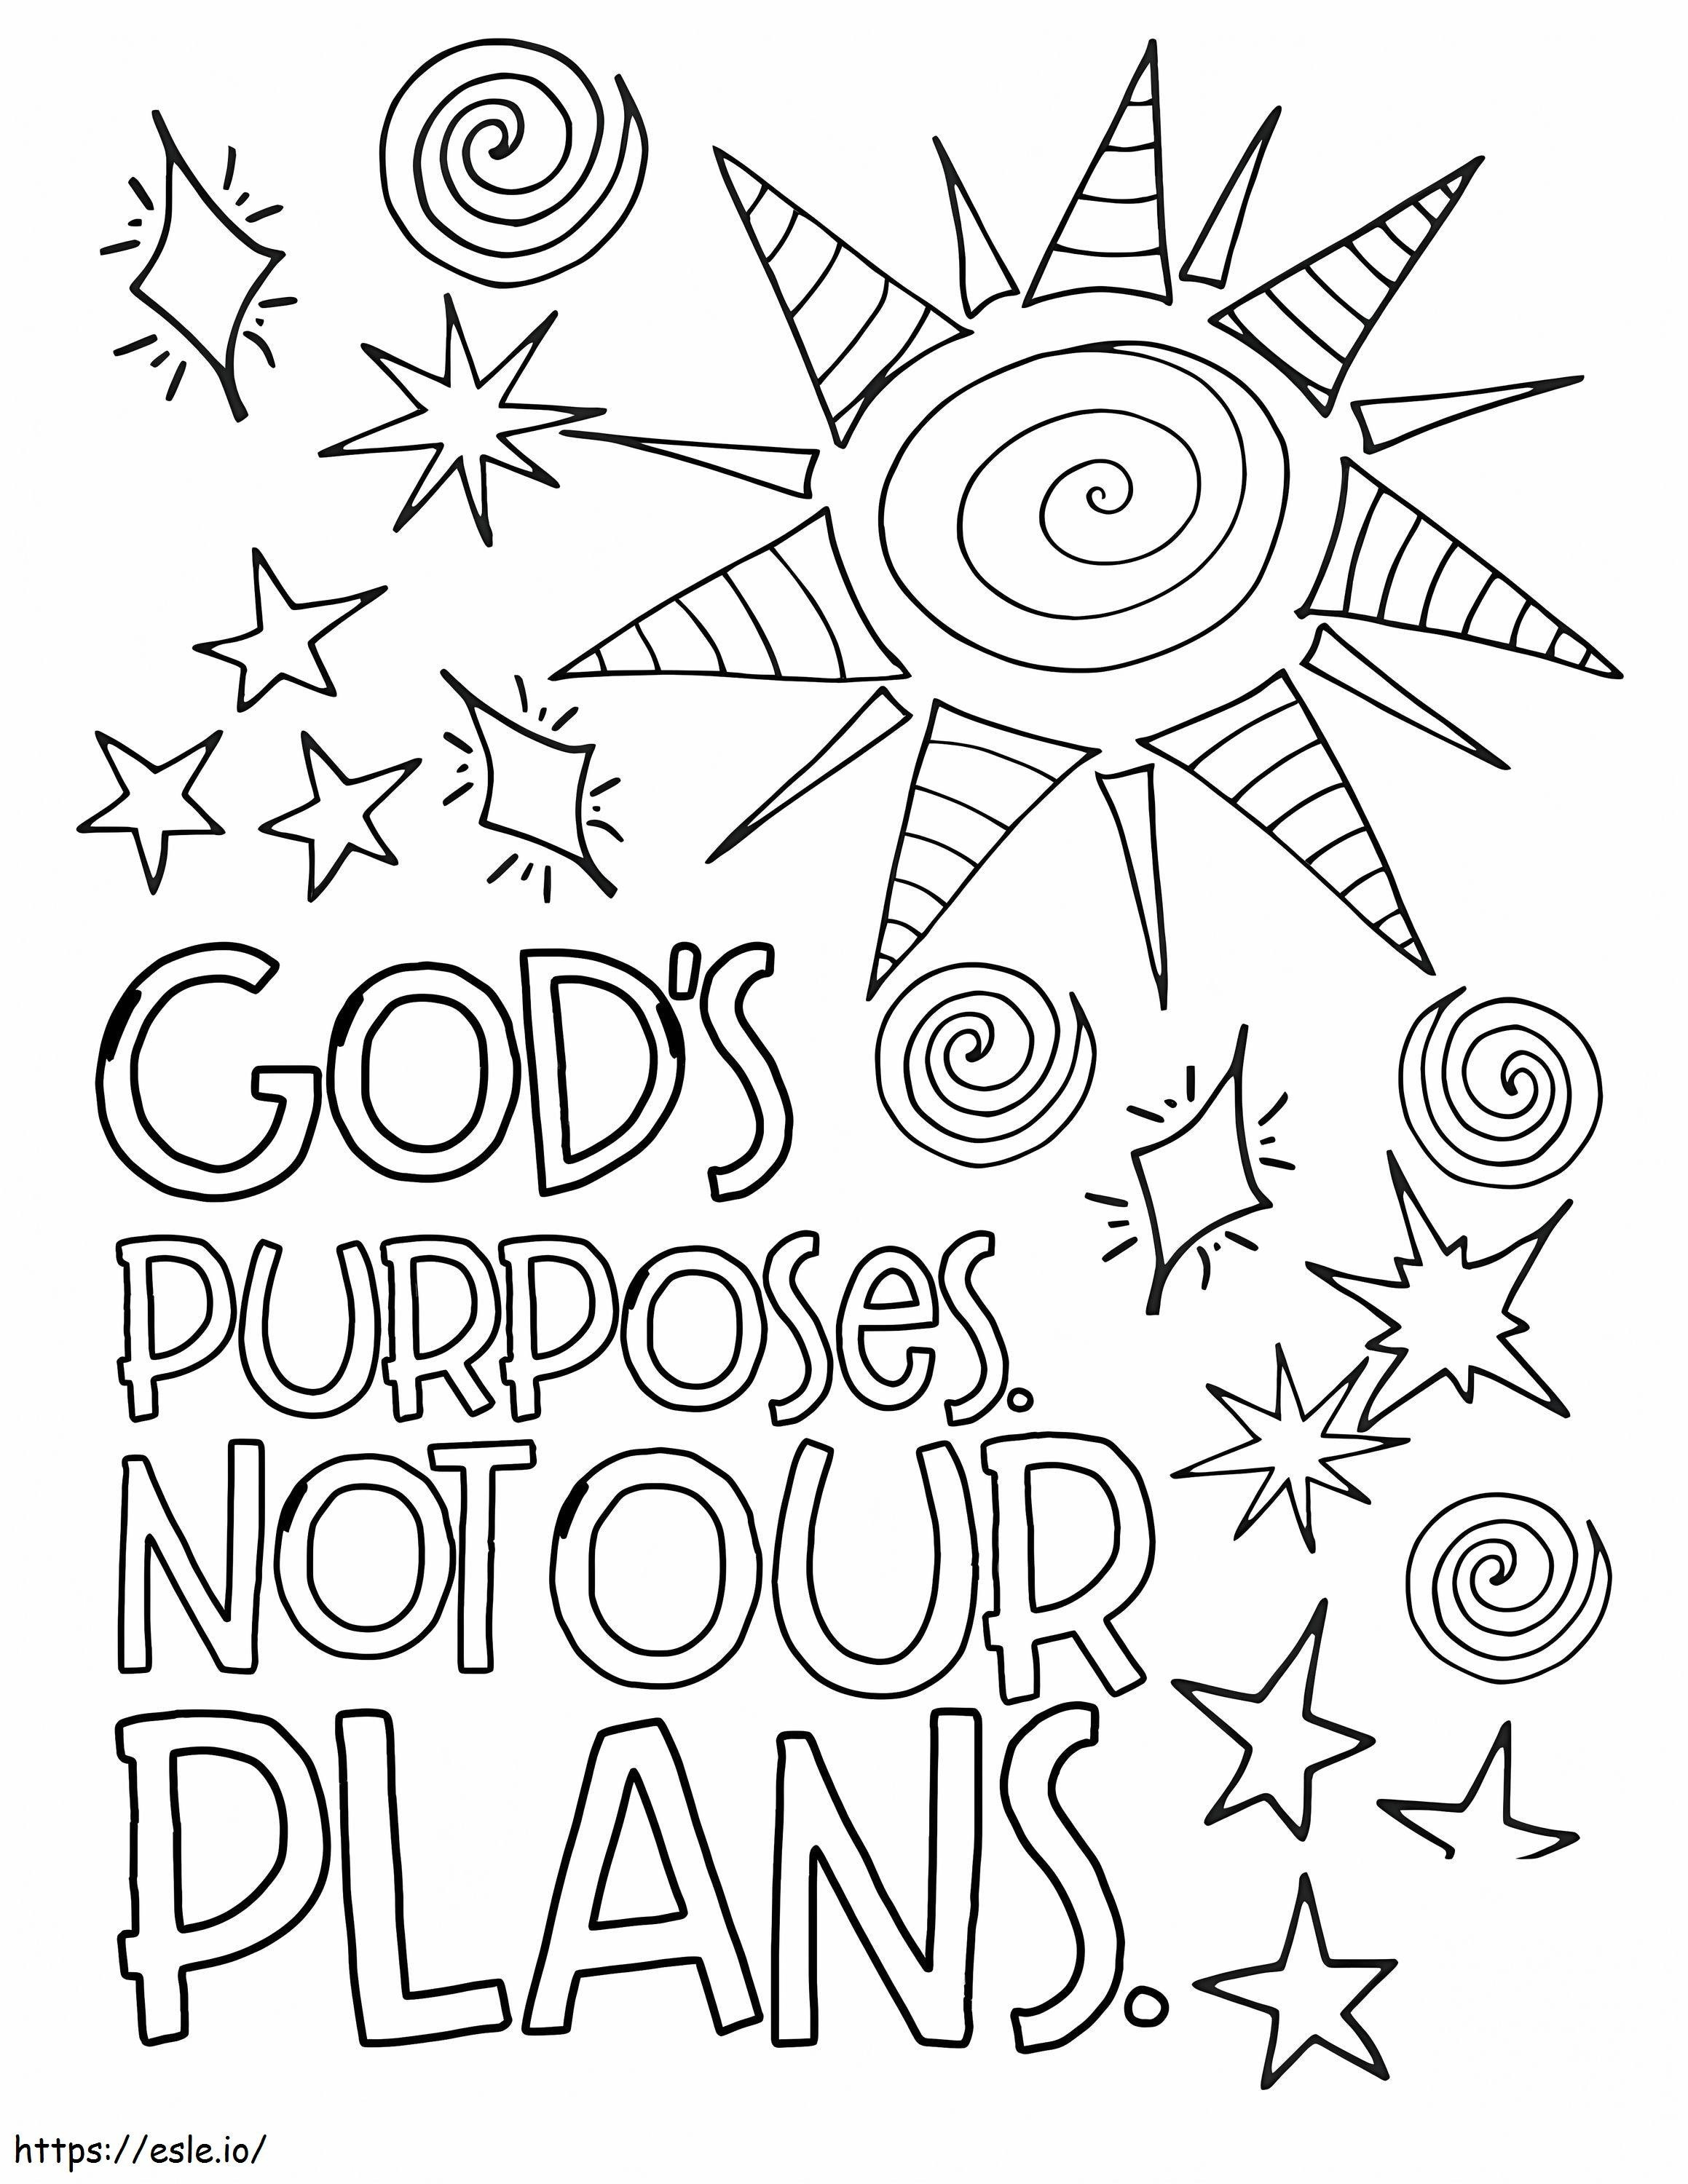 Los propósitos de Dios no son nuestros planes para colorear